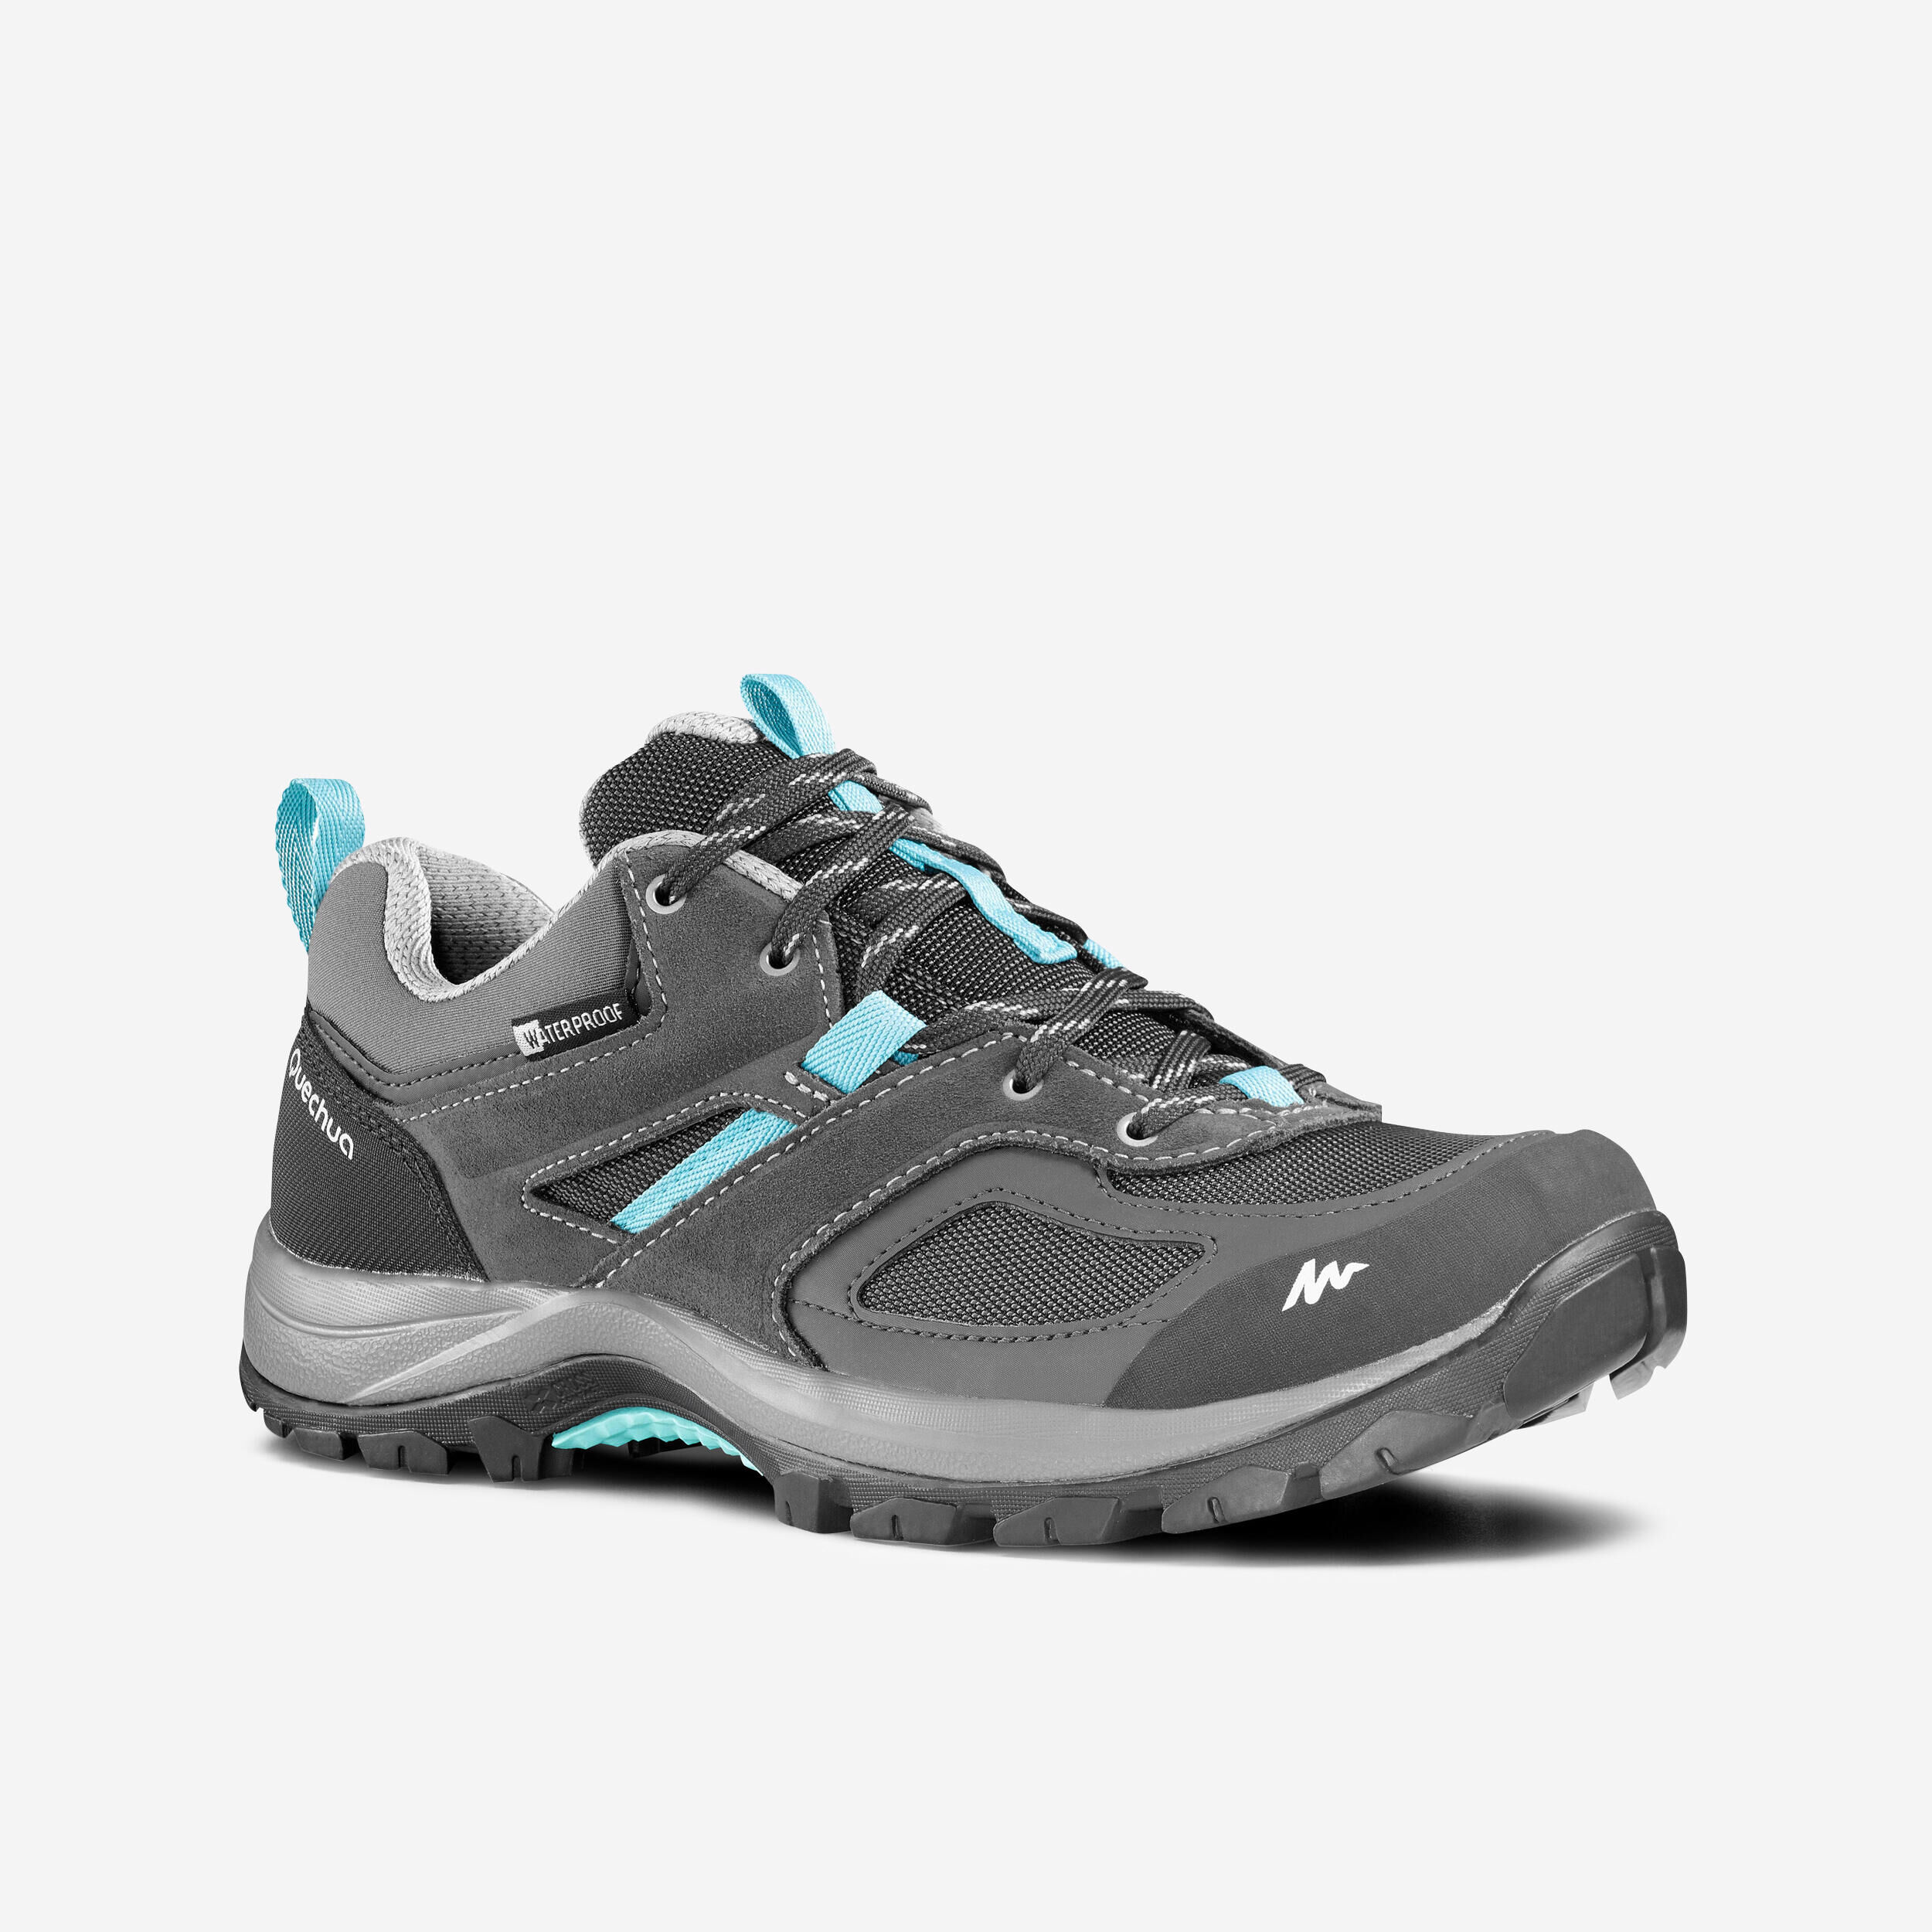 QUECHUA Women’s Waterproof Mountain Walking Shoes - MH100 - Grey/Blue